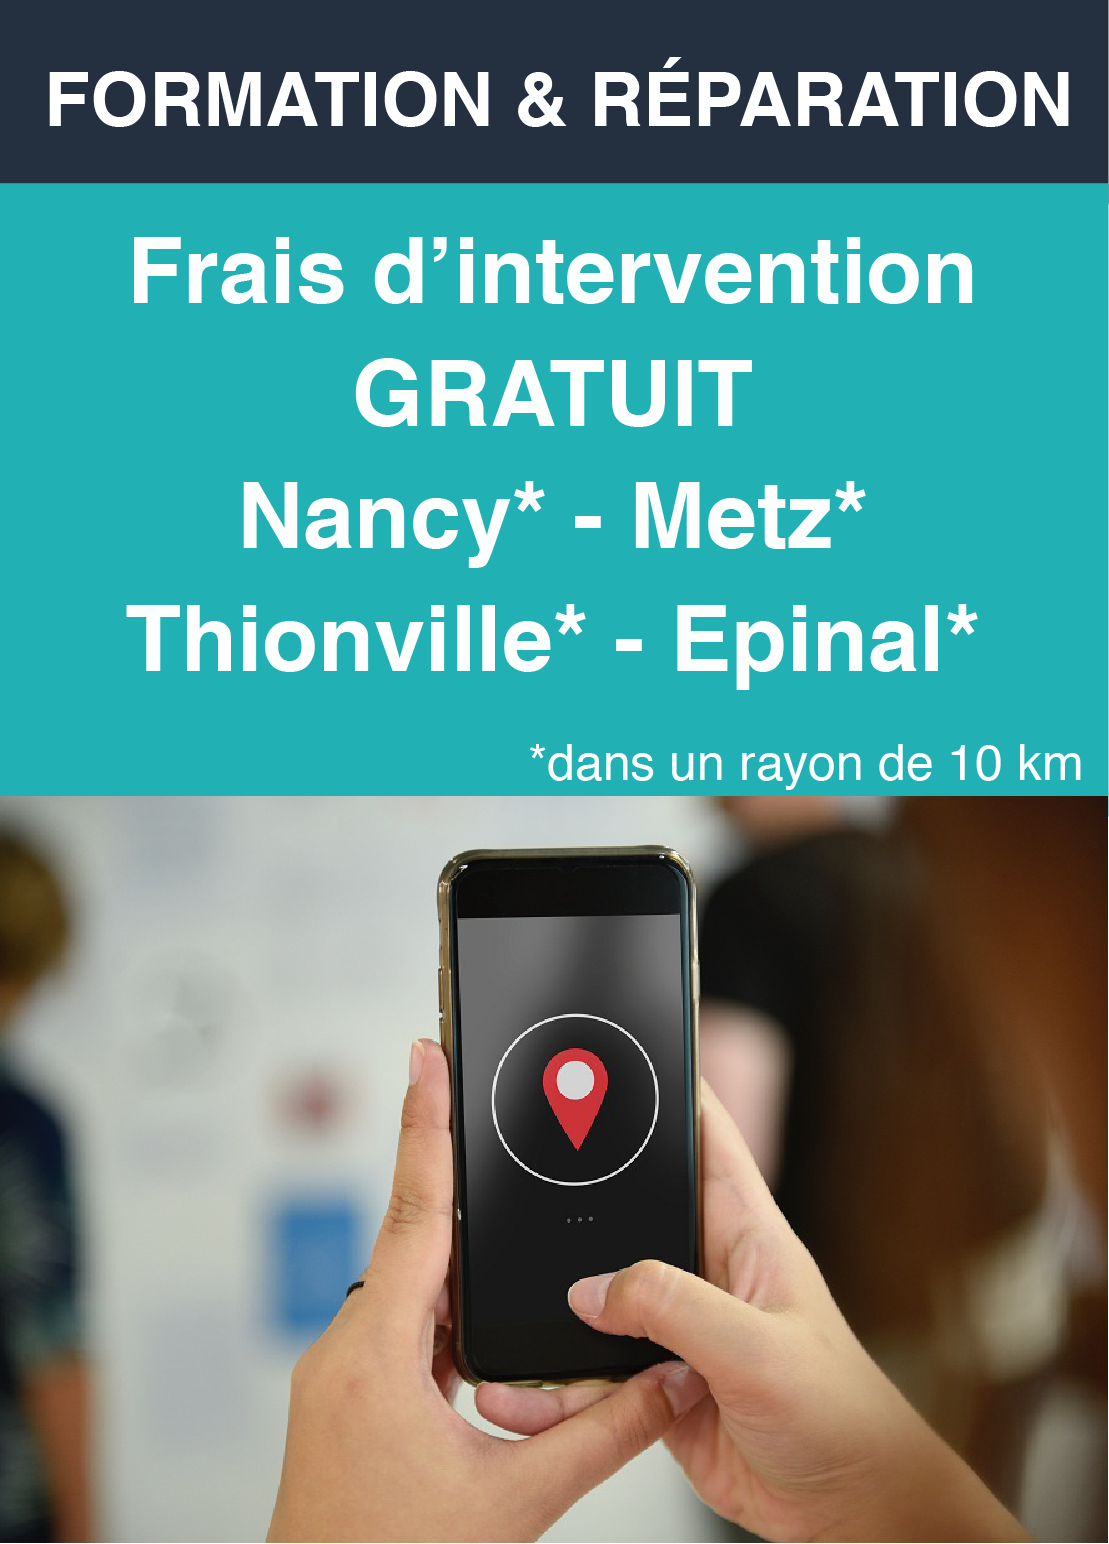 Frais d'intervention gratuit - Metz - Nancy - Thionville